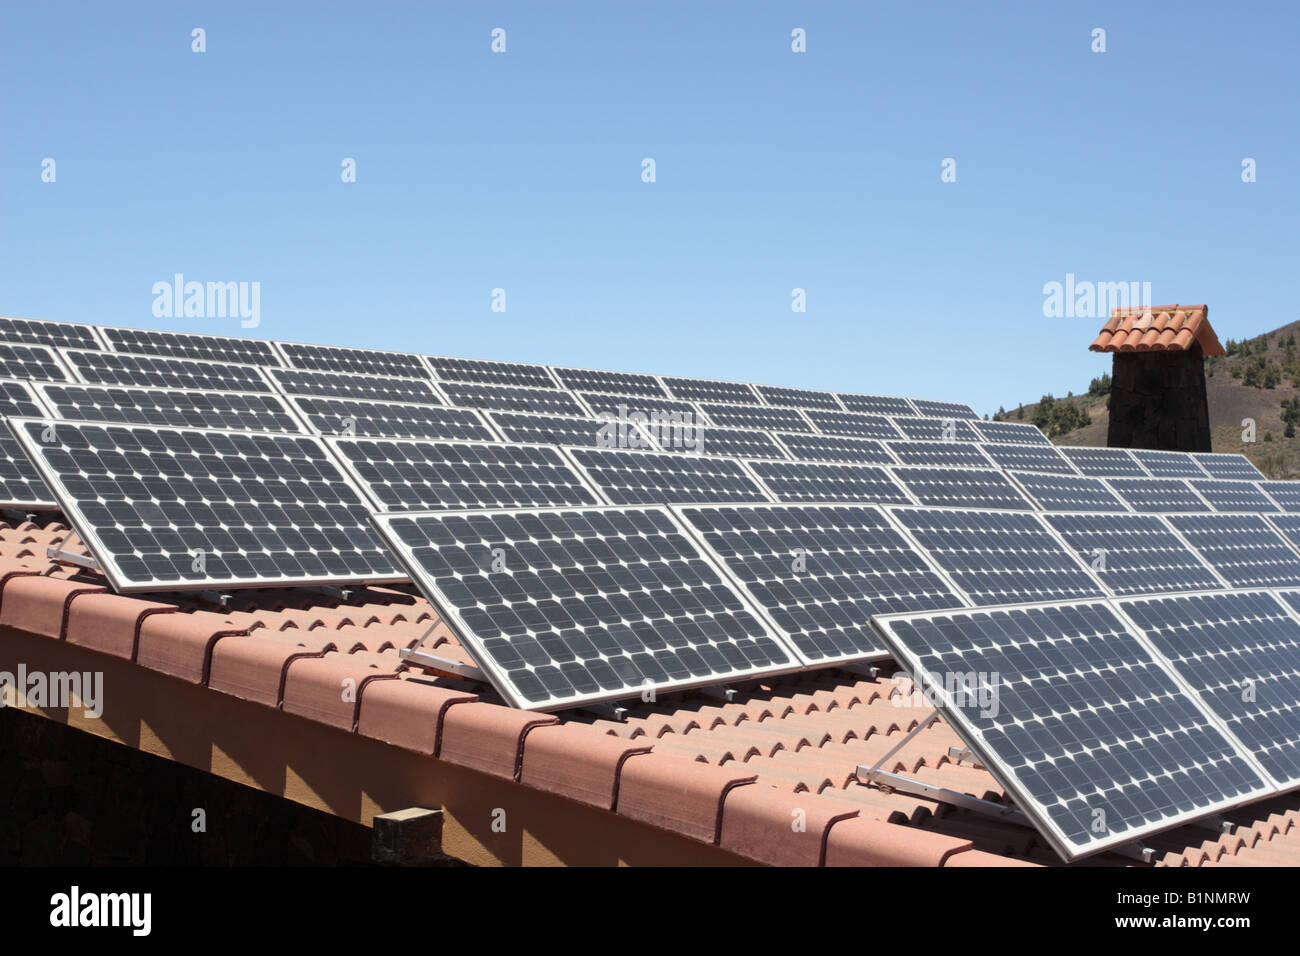 Photo Voltaic pannelli solari sul tetto del centro visitatori di Las Canadas del Teide Foto Stock